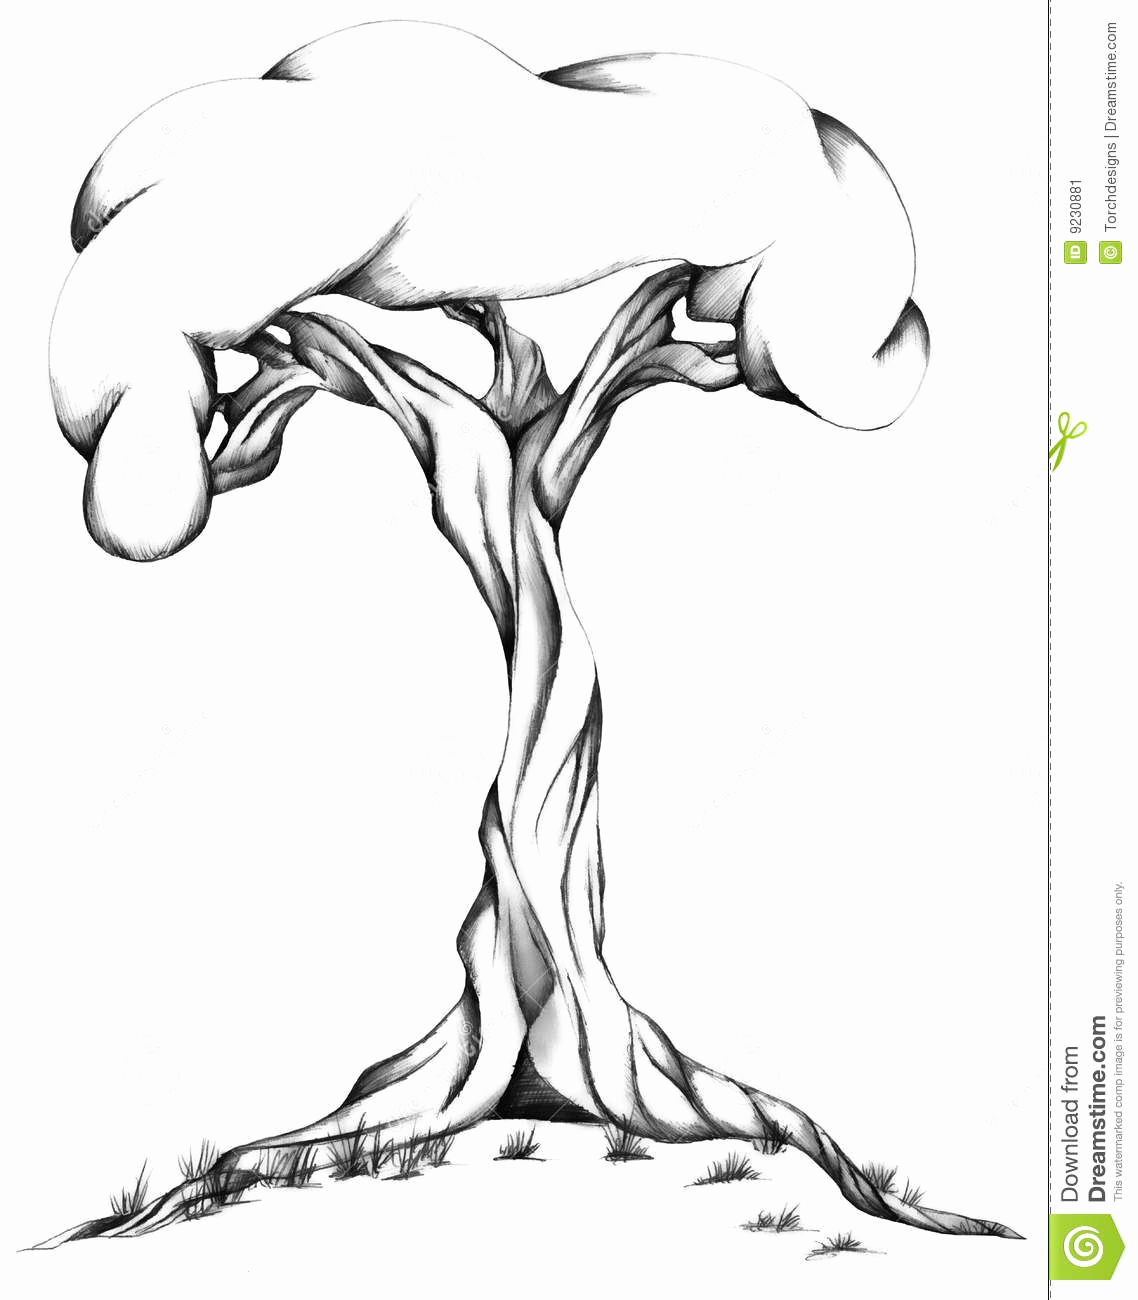 Black and White Illustration New Twisted Tree Illustration Stock Image Image